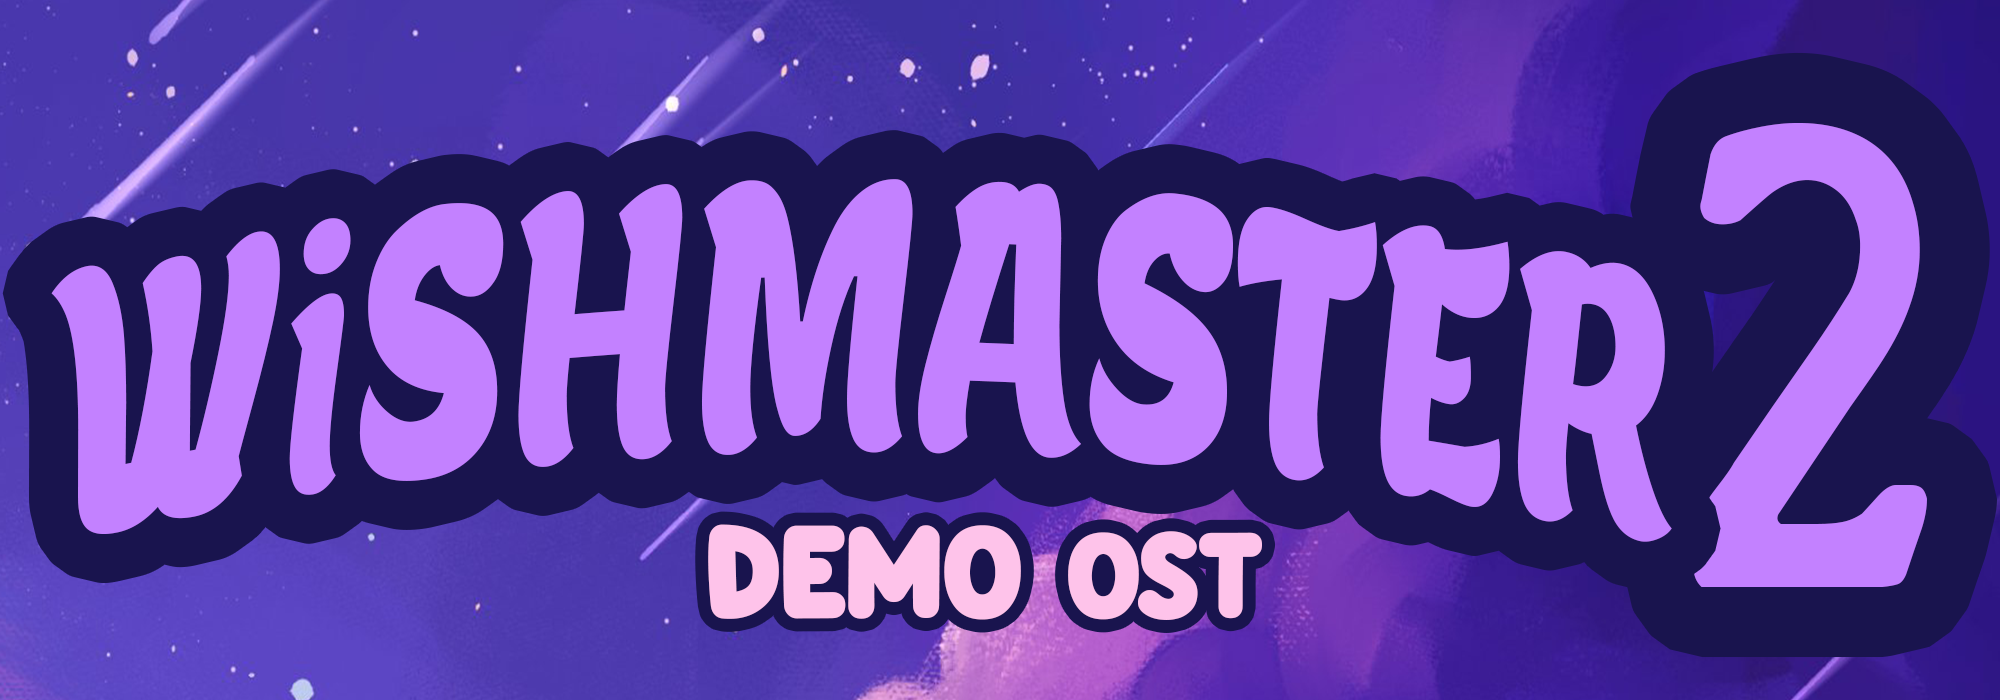 WiSHMASTER 2 Demo OST